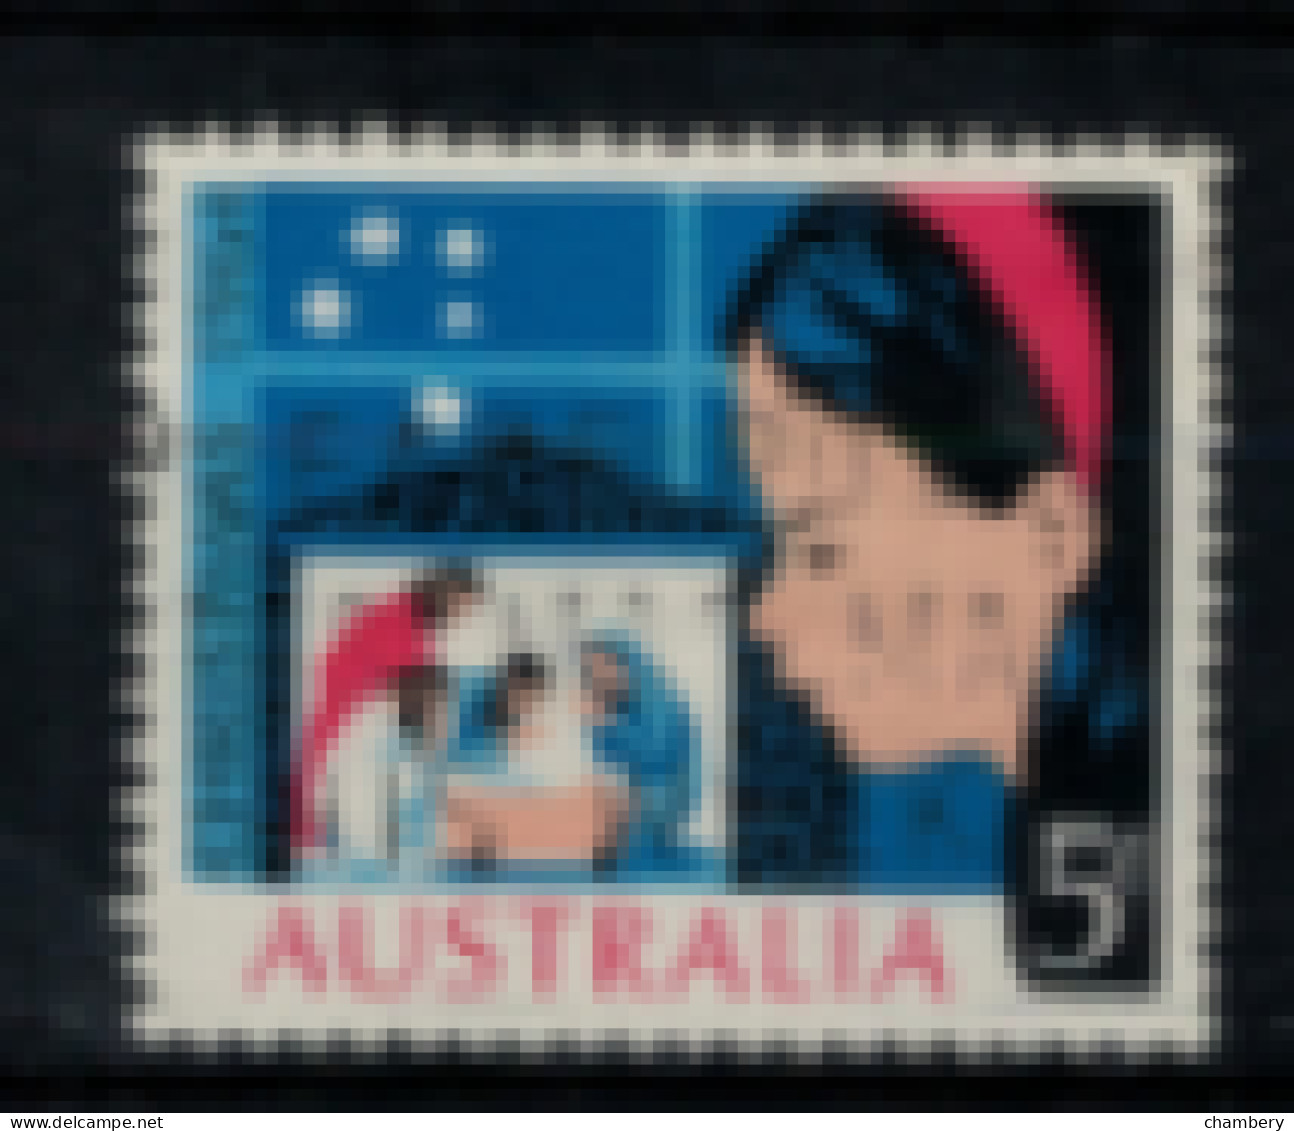 Australie - "Noël : L'enfant Et La Crèche" - T. Oblitéré N° 307 De 1964 - Oblitérés